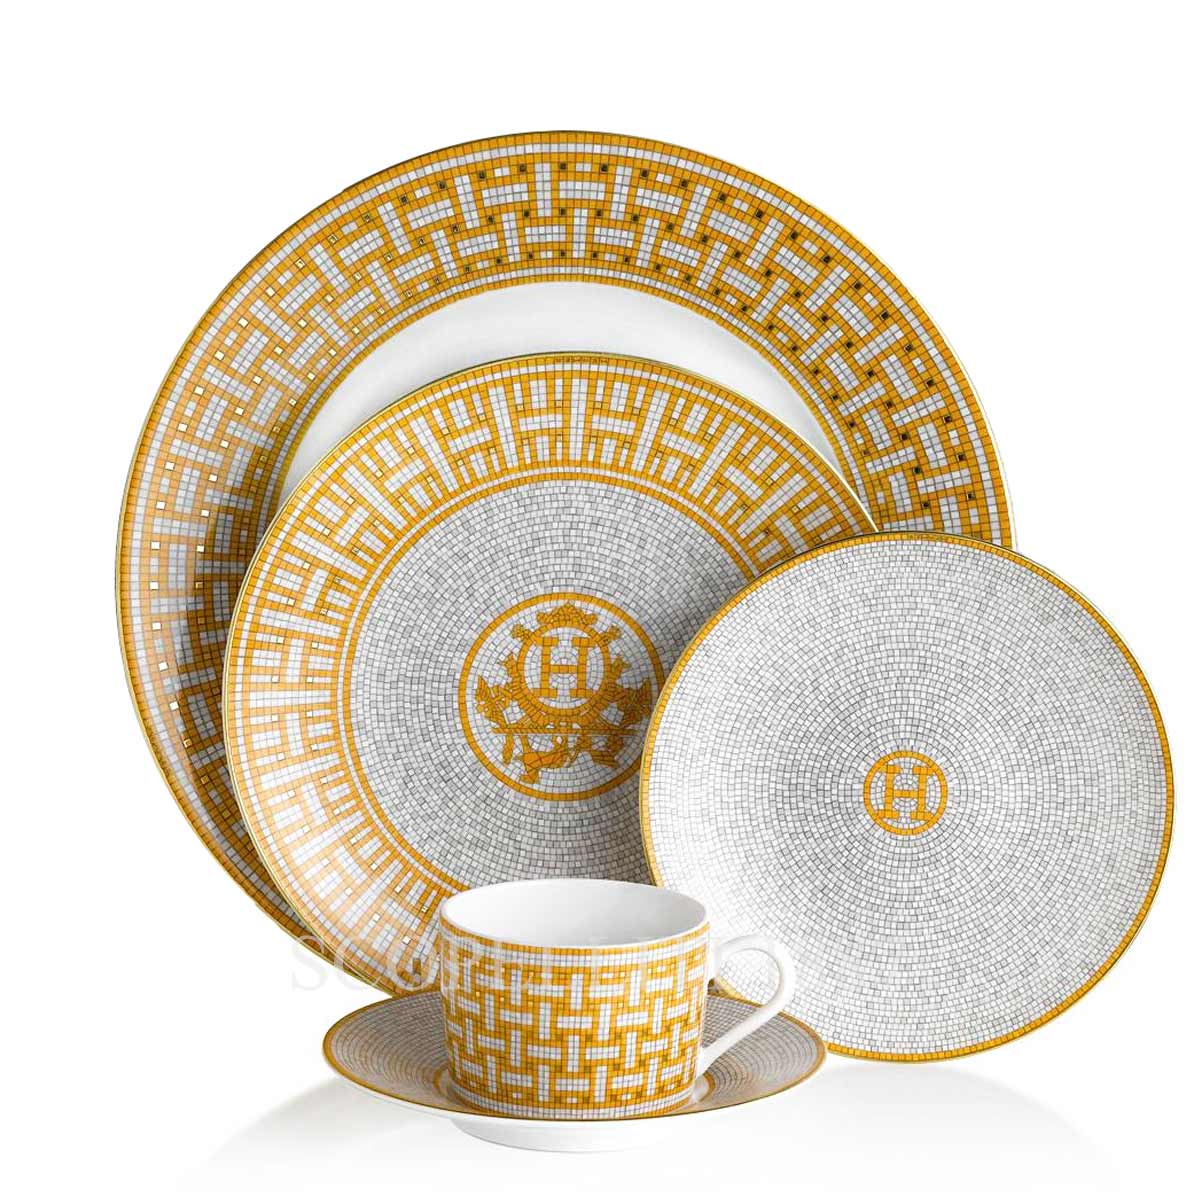 Authentic HERMES Tea Cup & Saucer Mosaique au 24 Gold French Porcelain